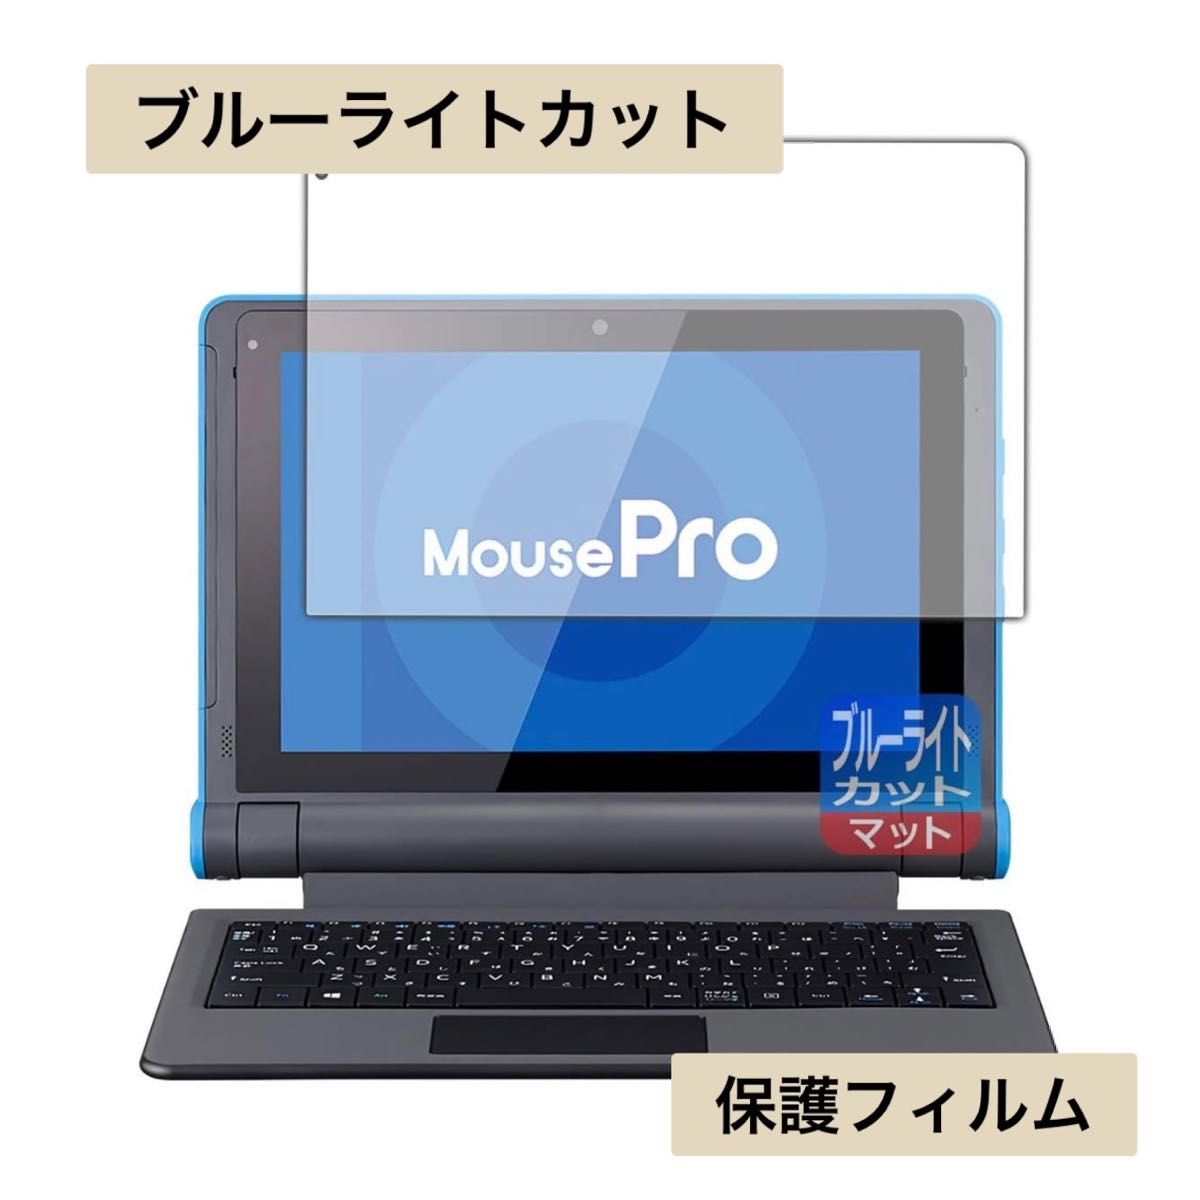 PDA工房 MousePro P101シリーズ (MousePro-P101A) ブルーライトカット 保護 フィルム 日本製